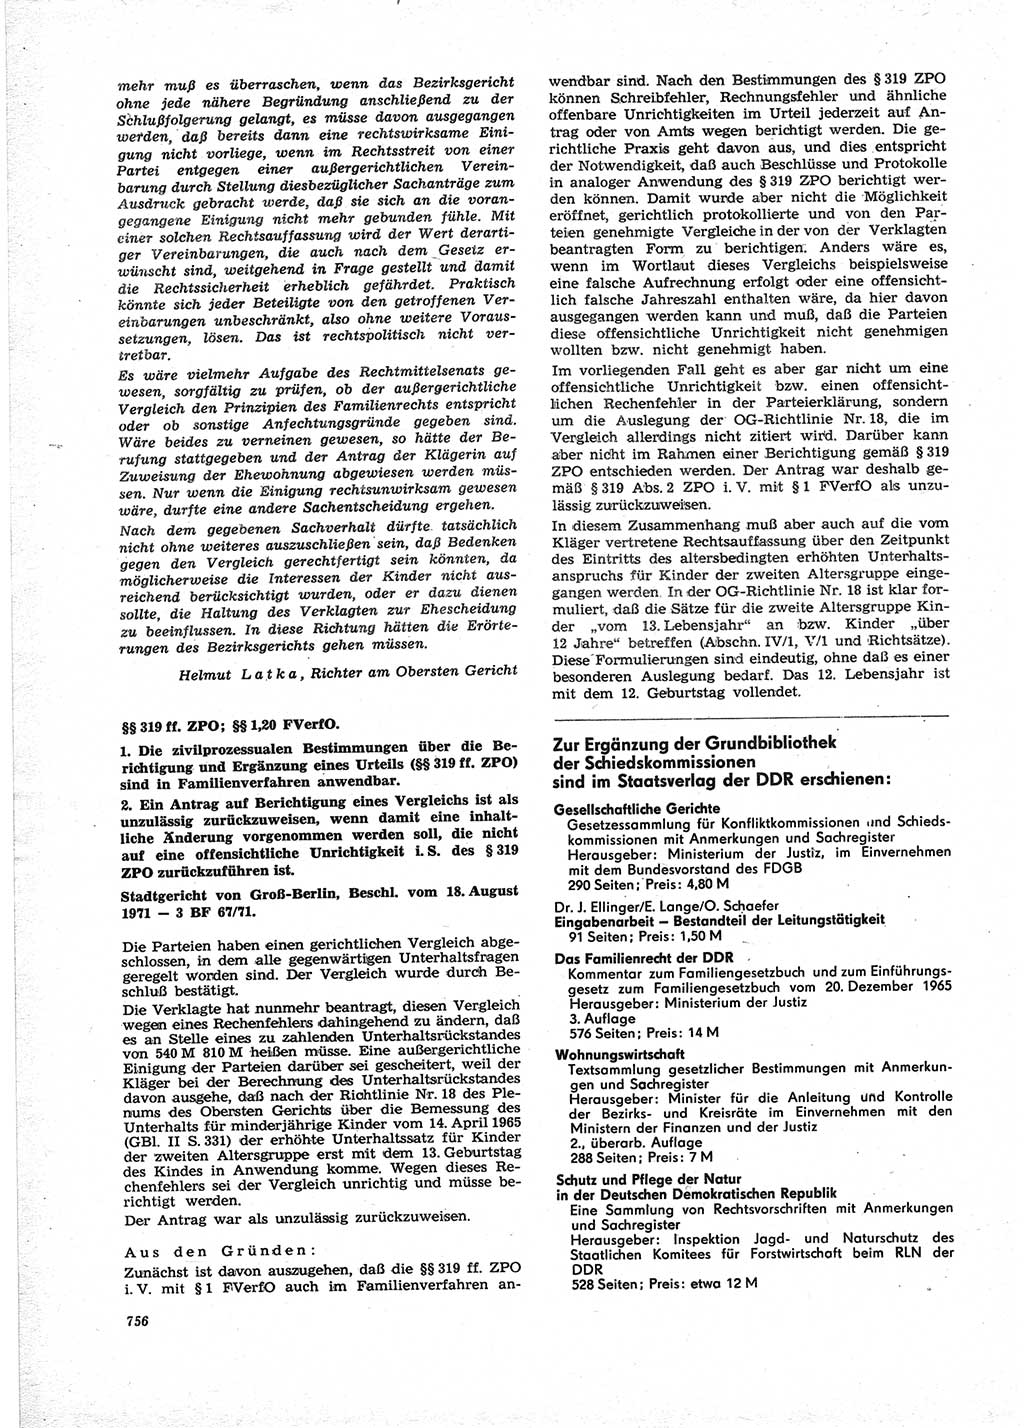 Neue Justiz (NJ), Zeitschrift für Recht und Rechtswissenschaft [Deutsche Demokratische Republik (DDR)], 25. Jahrgang 1971, Seite 756 (NJ DDR 1971, S. 756)